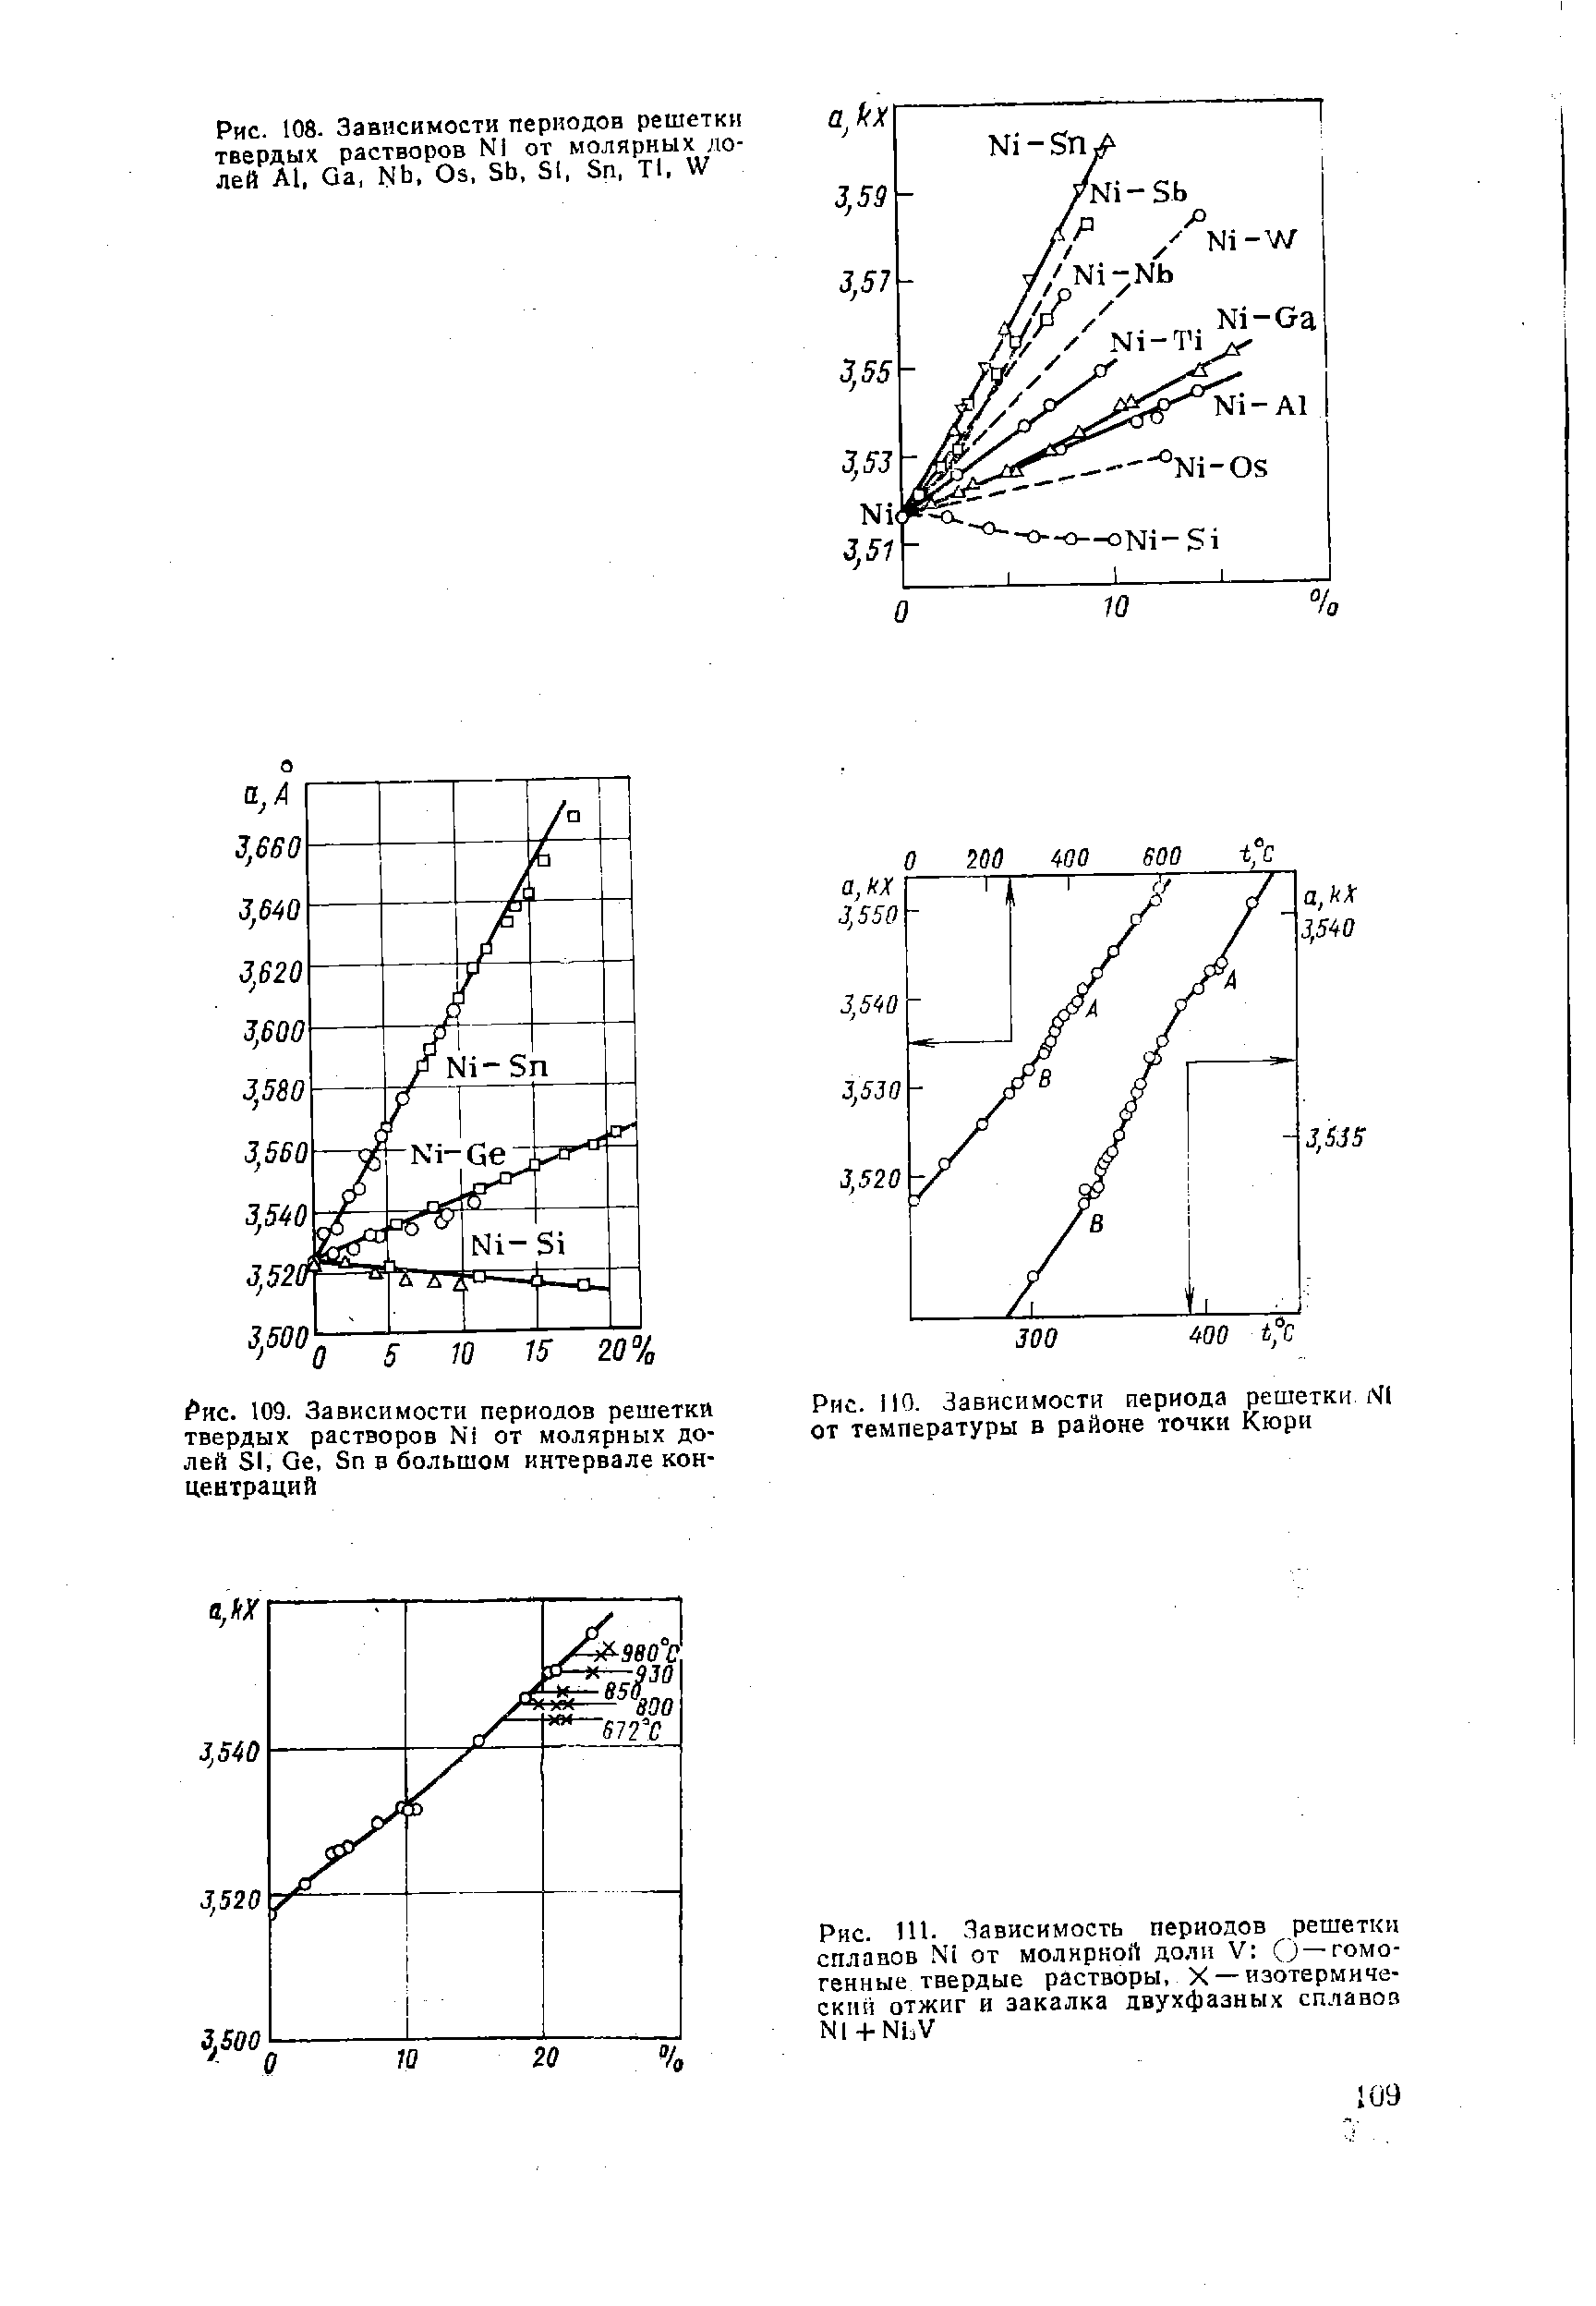 Рис. 108. Зависимости периодов решетки твердых растворов N1 от молярных долей А1, Qa, Nb, Os, Sb, SI, Sn, Tl, W
